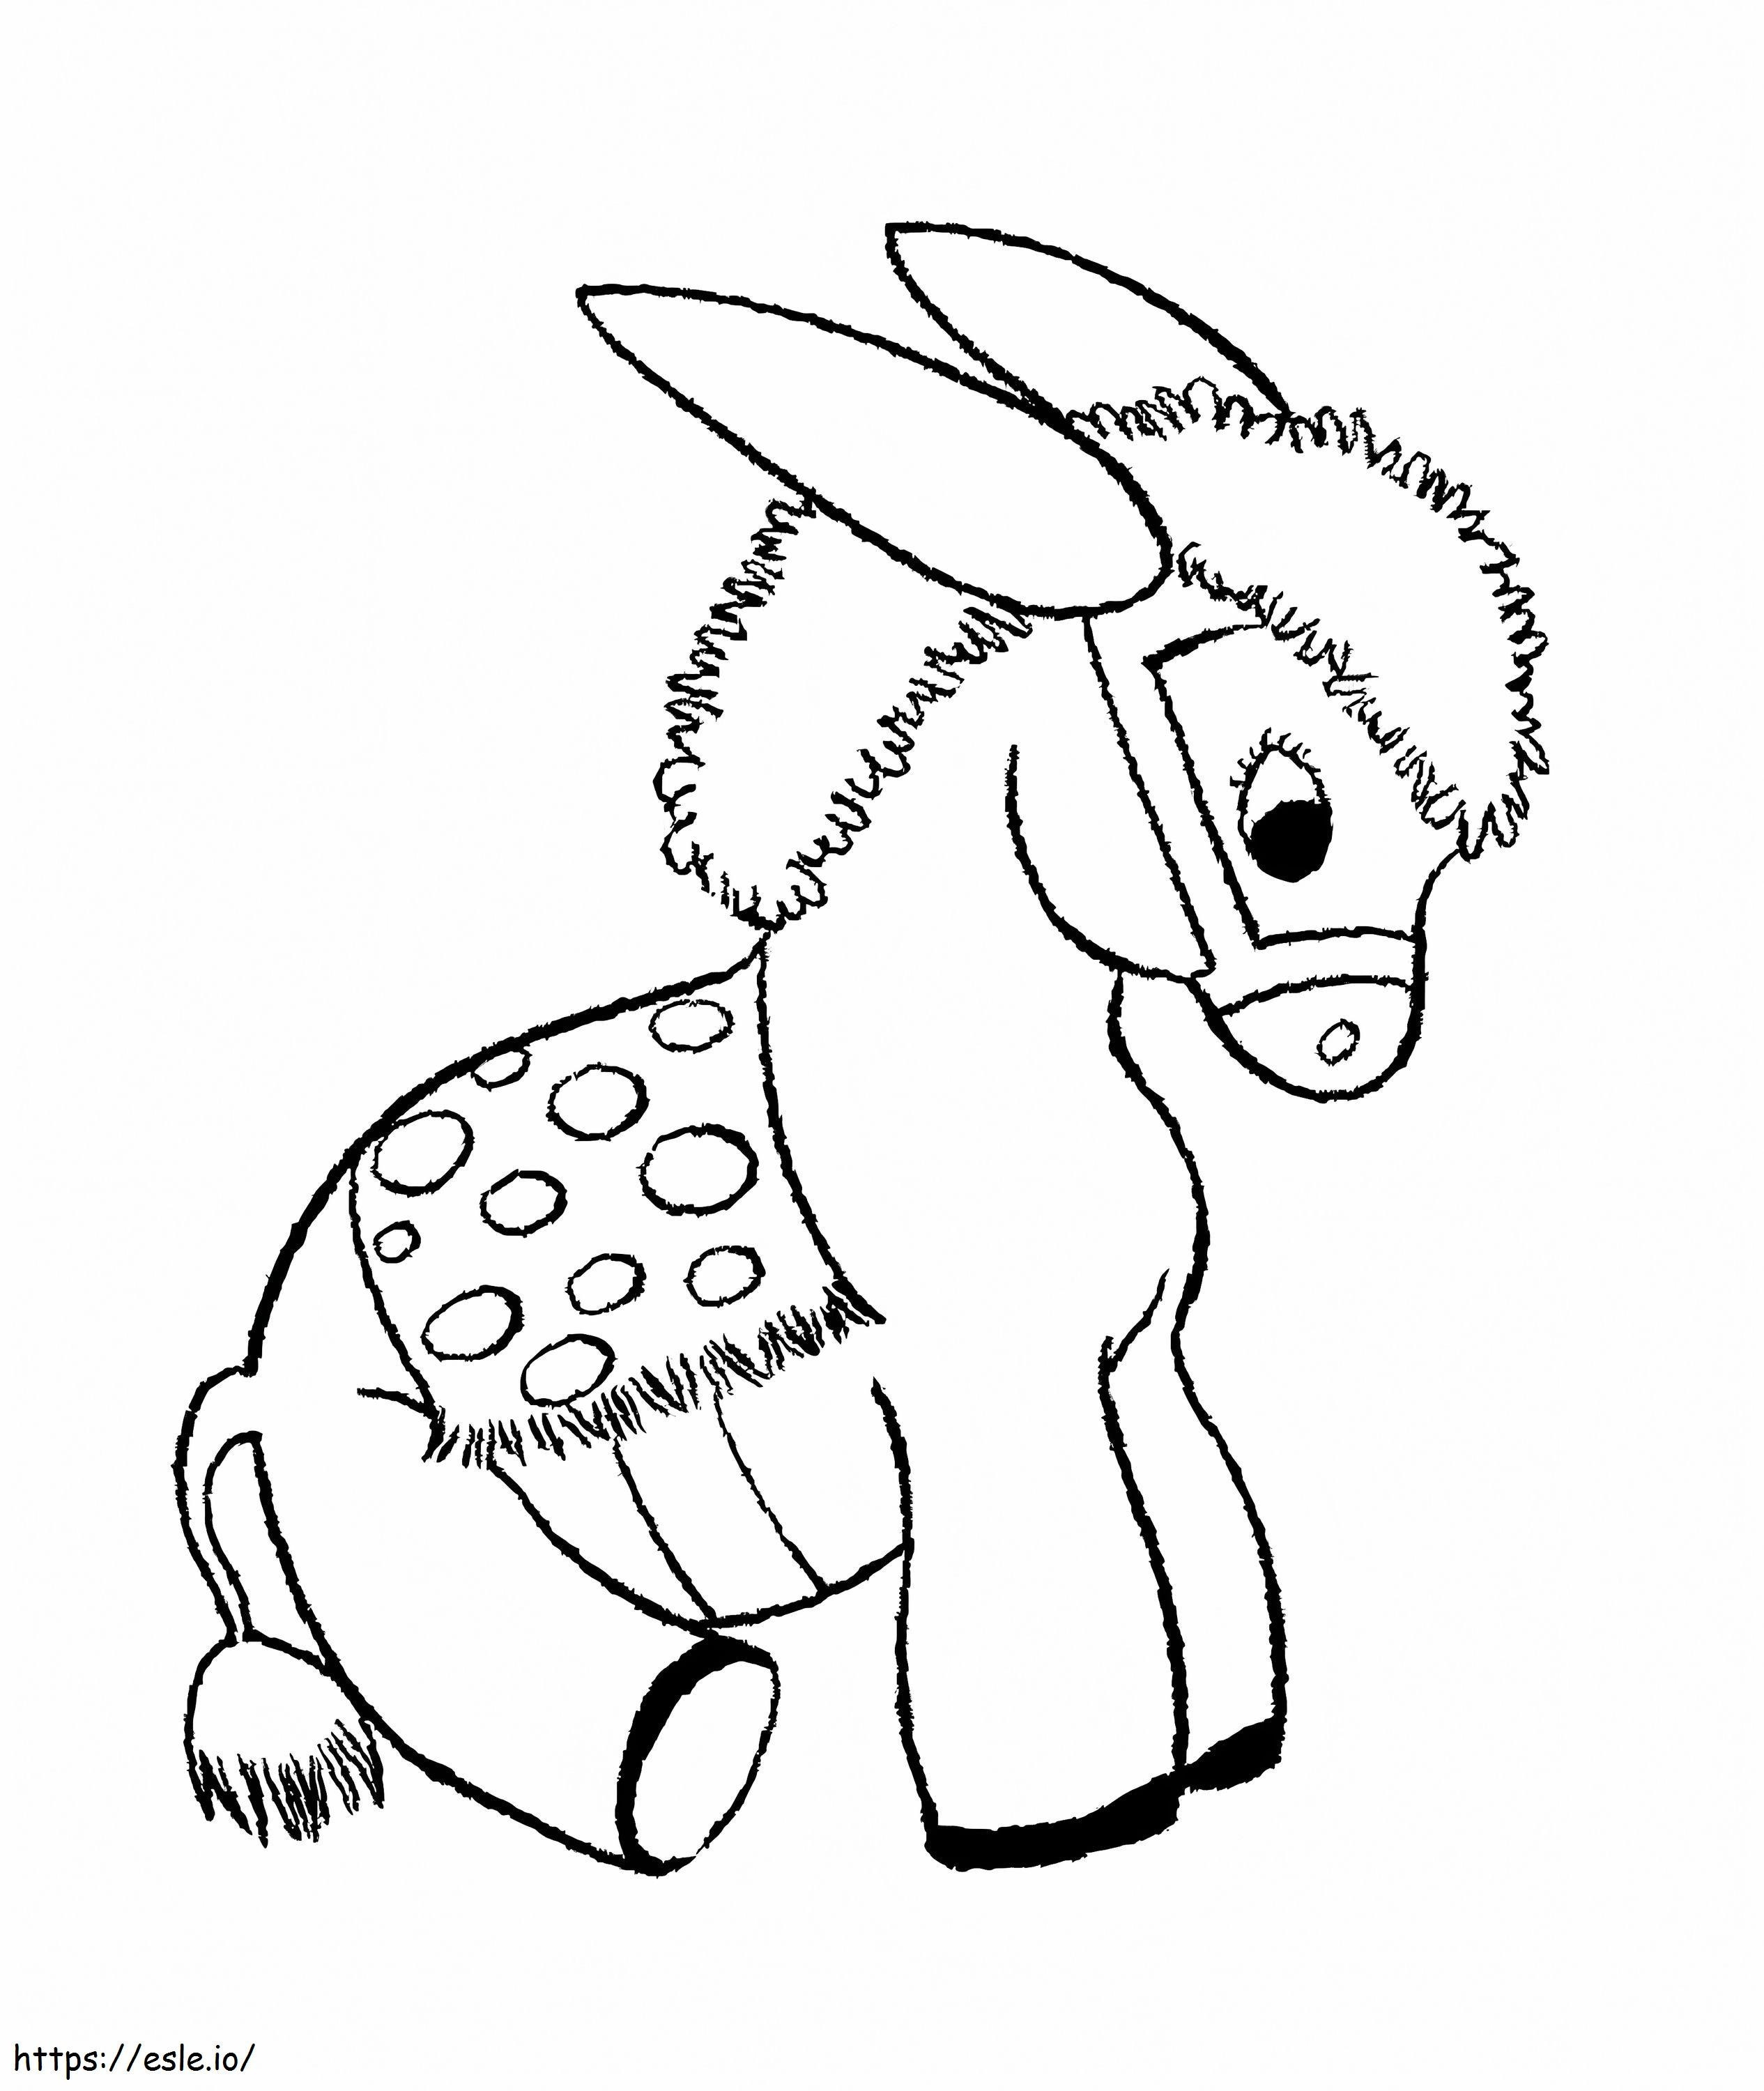 Coloriage Bébé âne assis à imprimer dessin